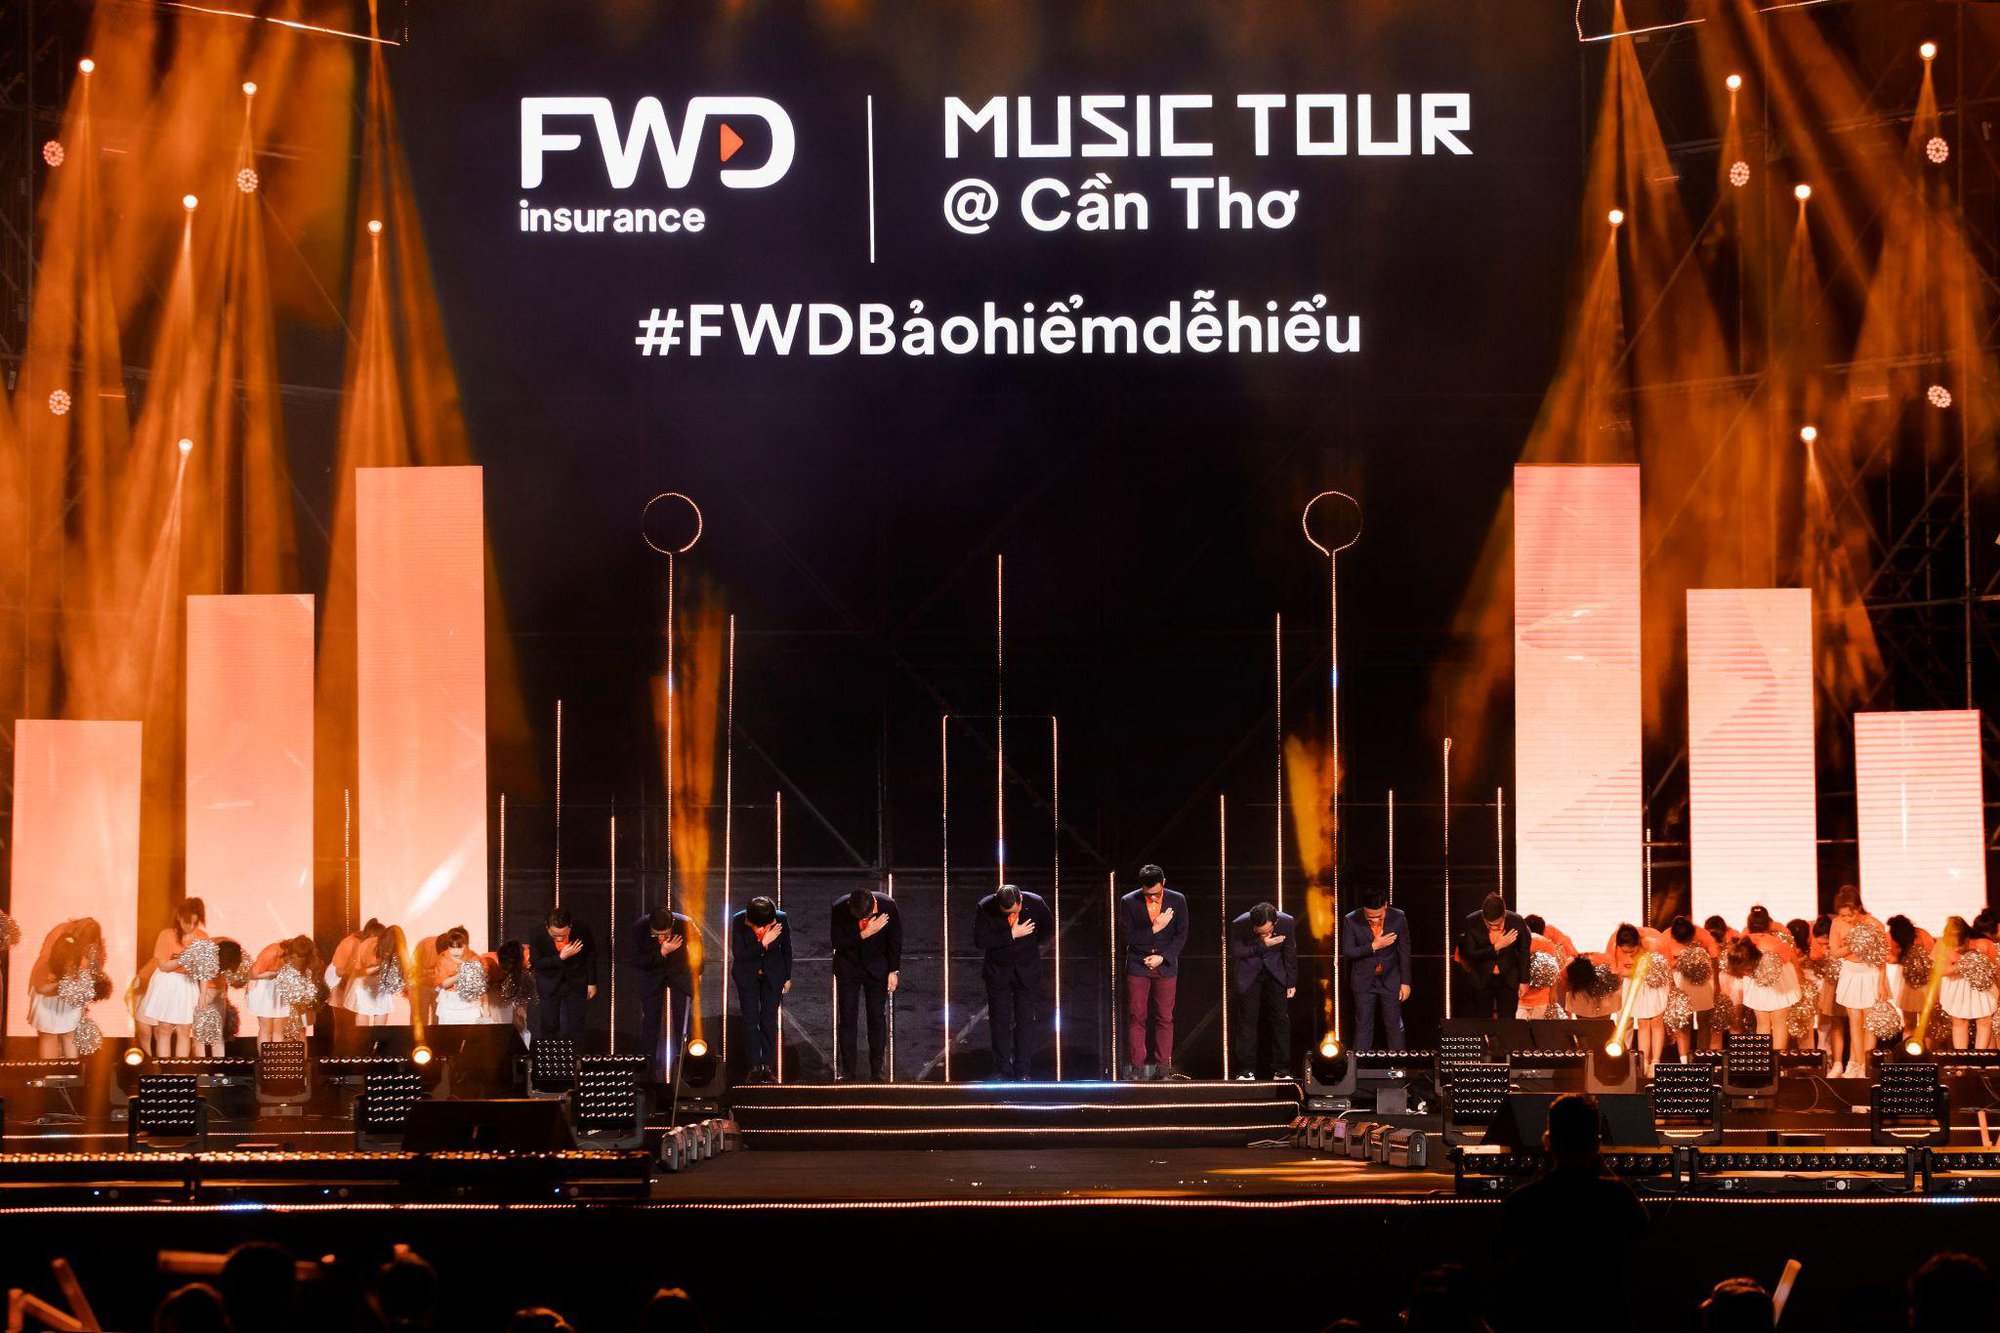 Bất ngờ với con số hơn 23 triệu lượt xem trên nền tảng TikTok của FWD Music Tour - Ảnh 4.